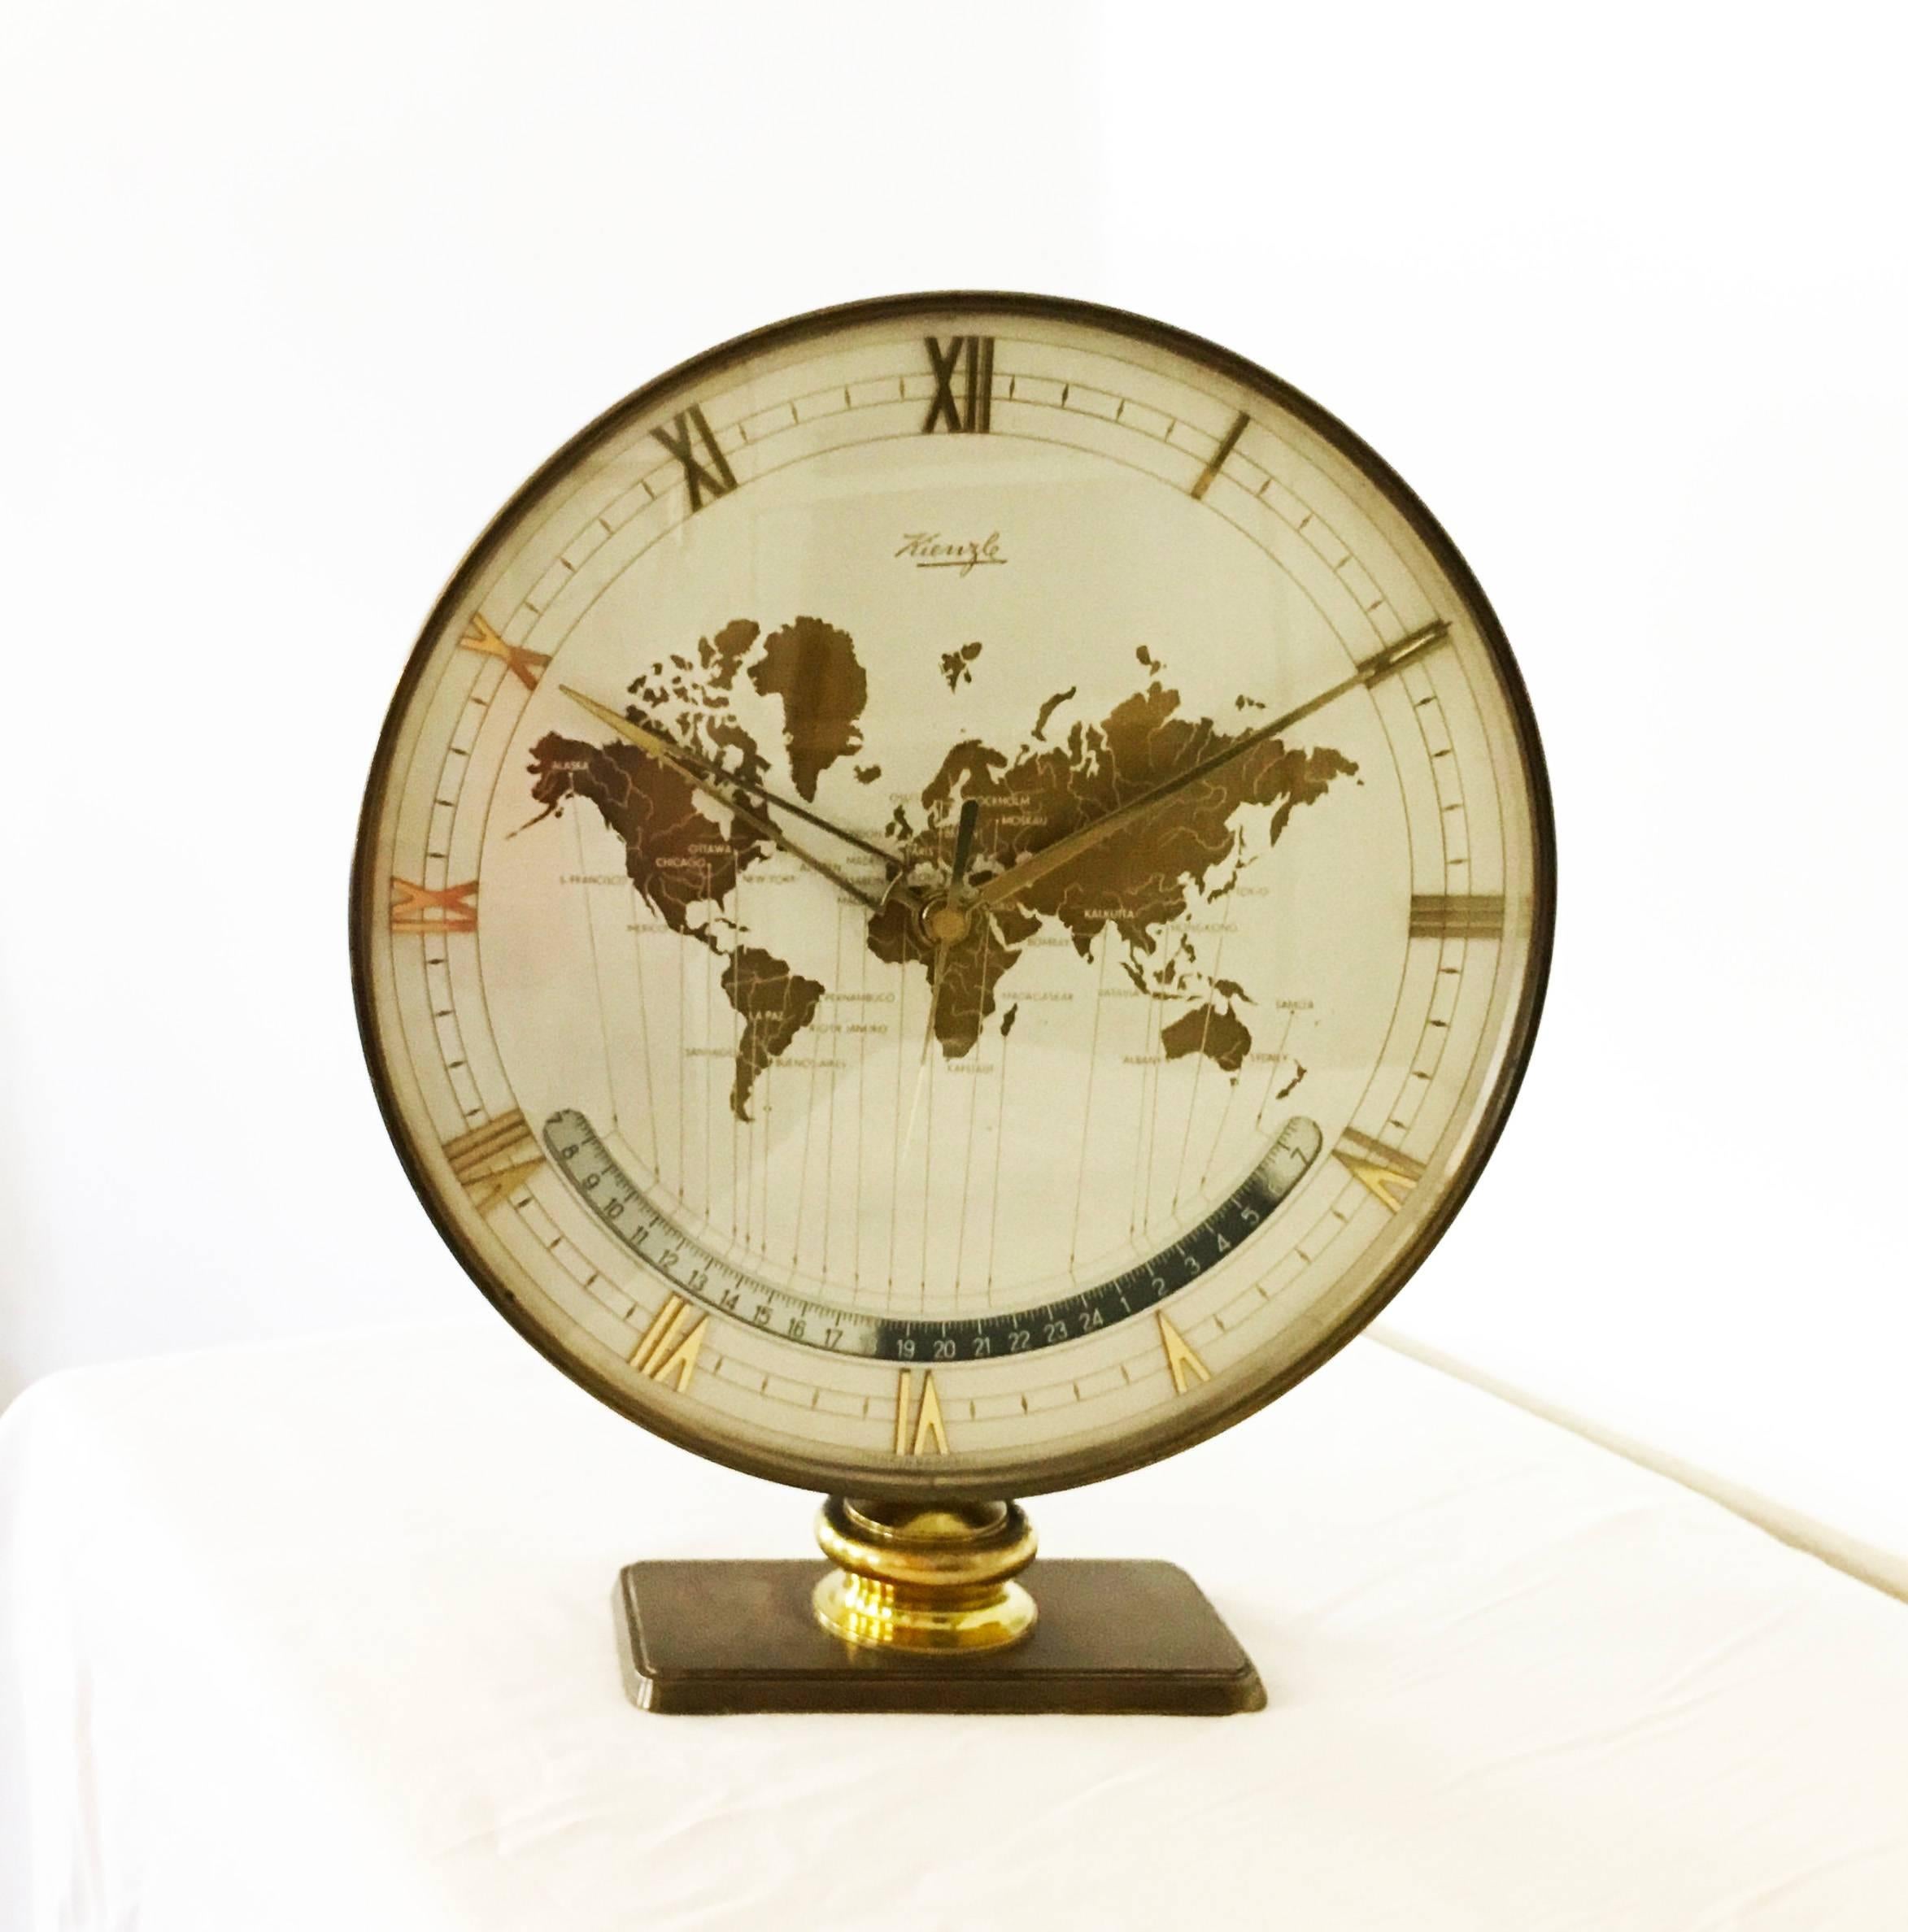 Horloge de zone automatique Kienzle world timer.
Une grande horloge de table exclusive de Ø 26cm ; magnifique cadran avec carte du monde et fuseaux horaires mondiaux, en verre, le lourd boîtier et la base sont en laiton massif. 
État d'origine